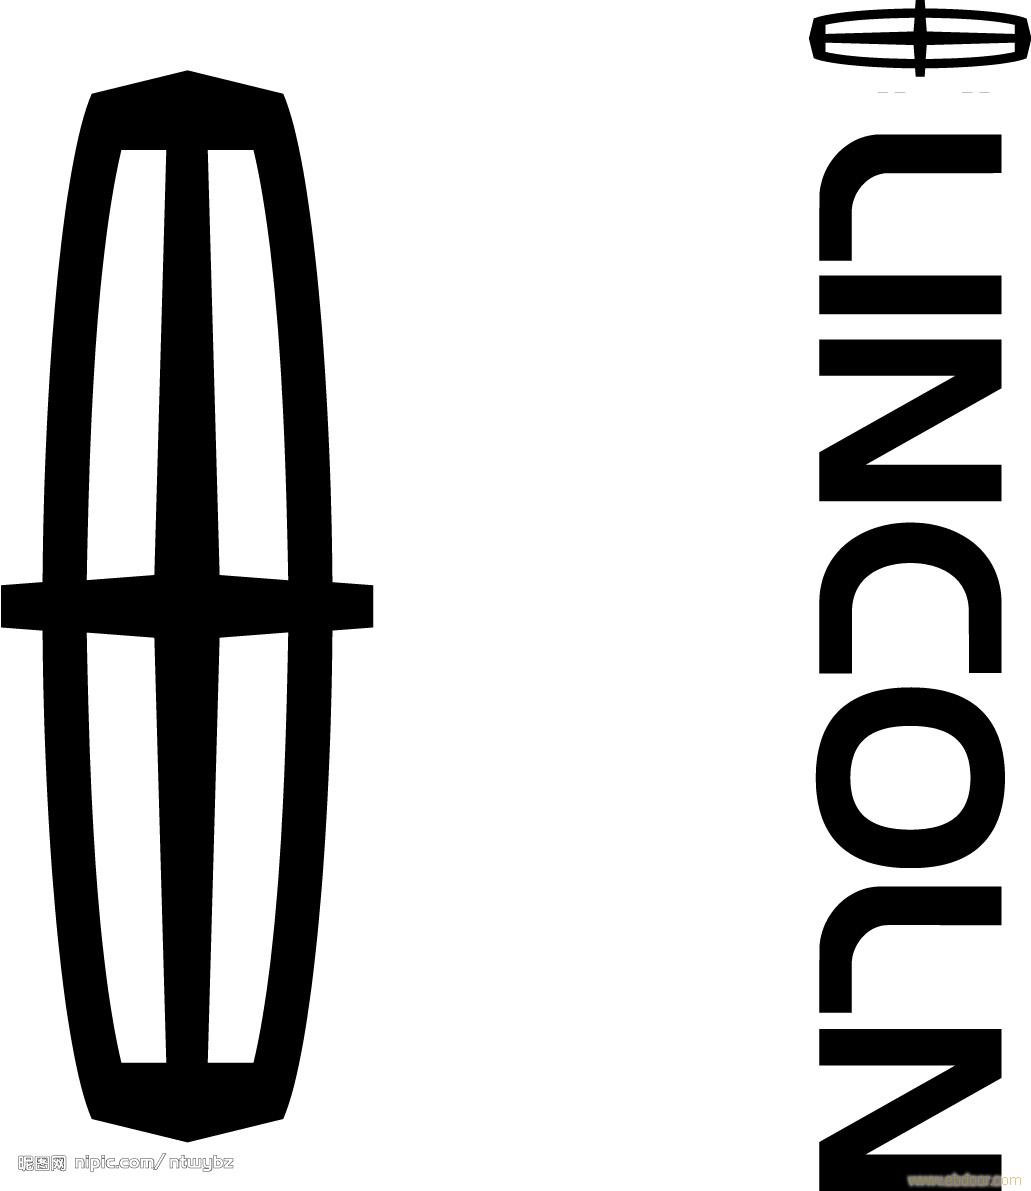 lincoln汽车mkz-Lincoln汽车mkt-Lincoln汽车mkx-Lincoln汽车mks